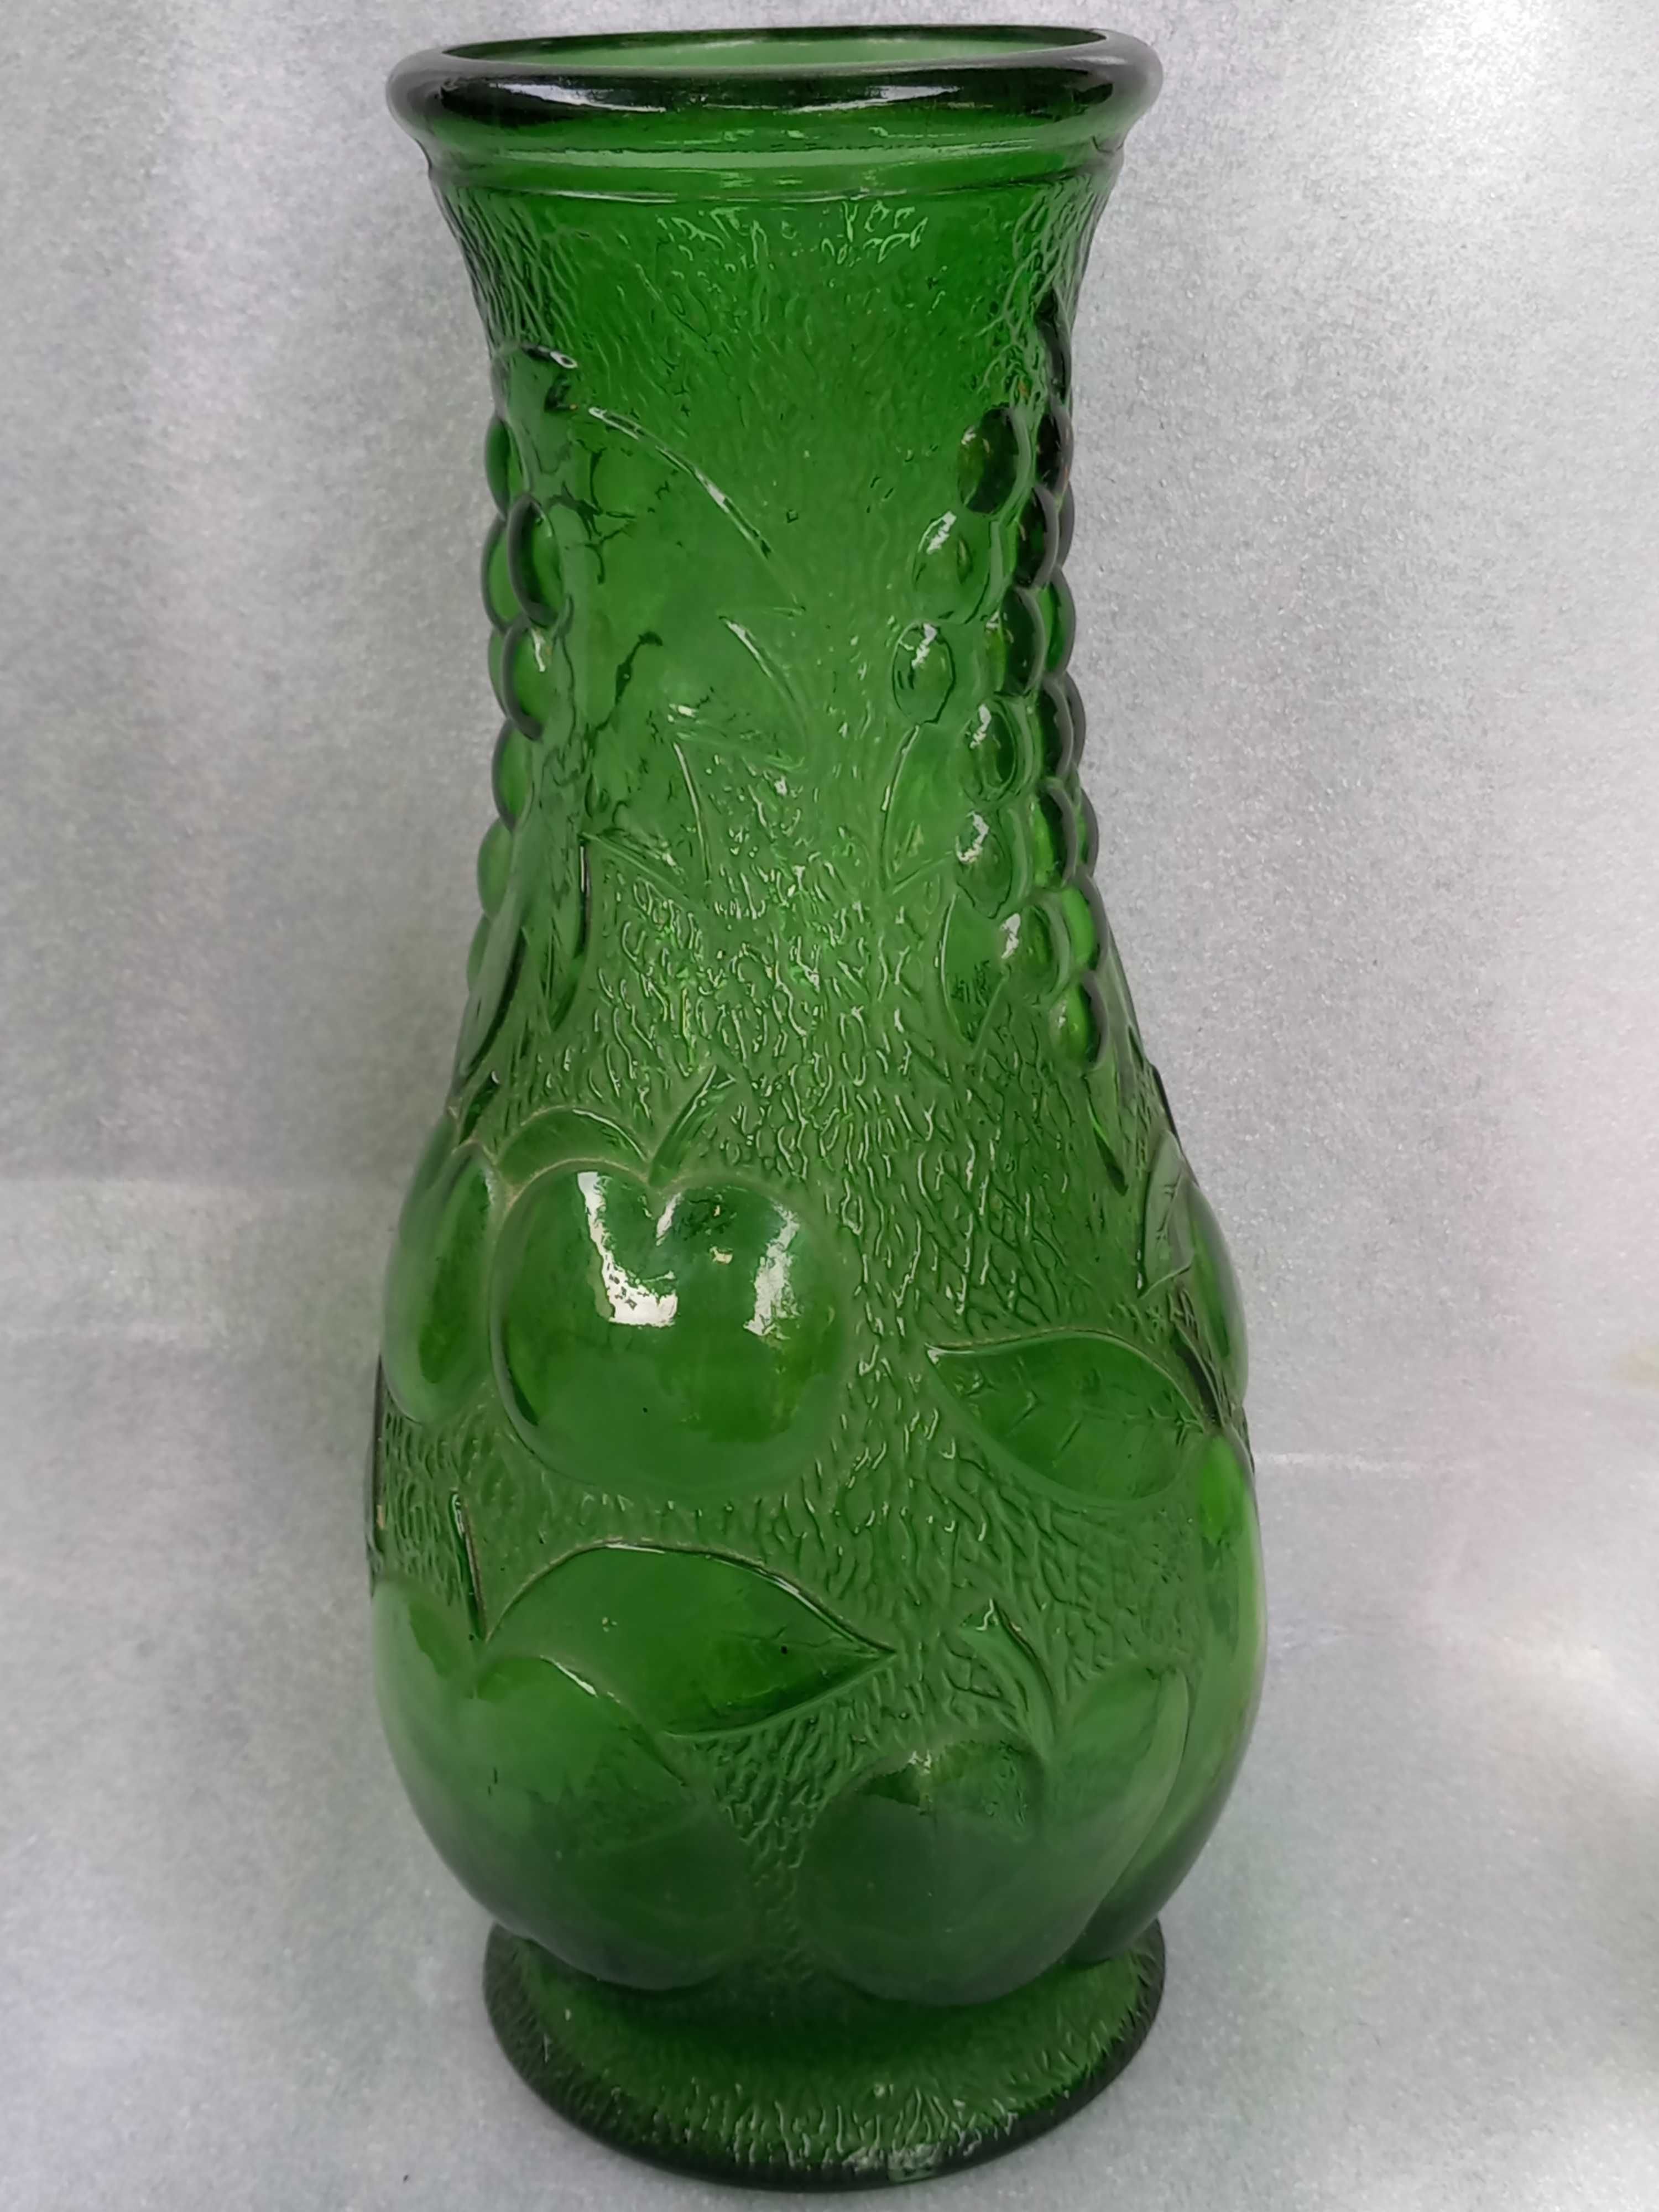 Jarra CONSTANTIN Made in Italy de vidro verde em bom estado